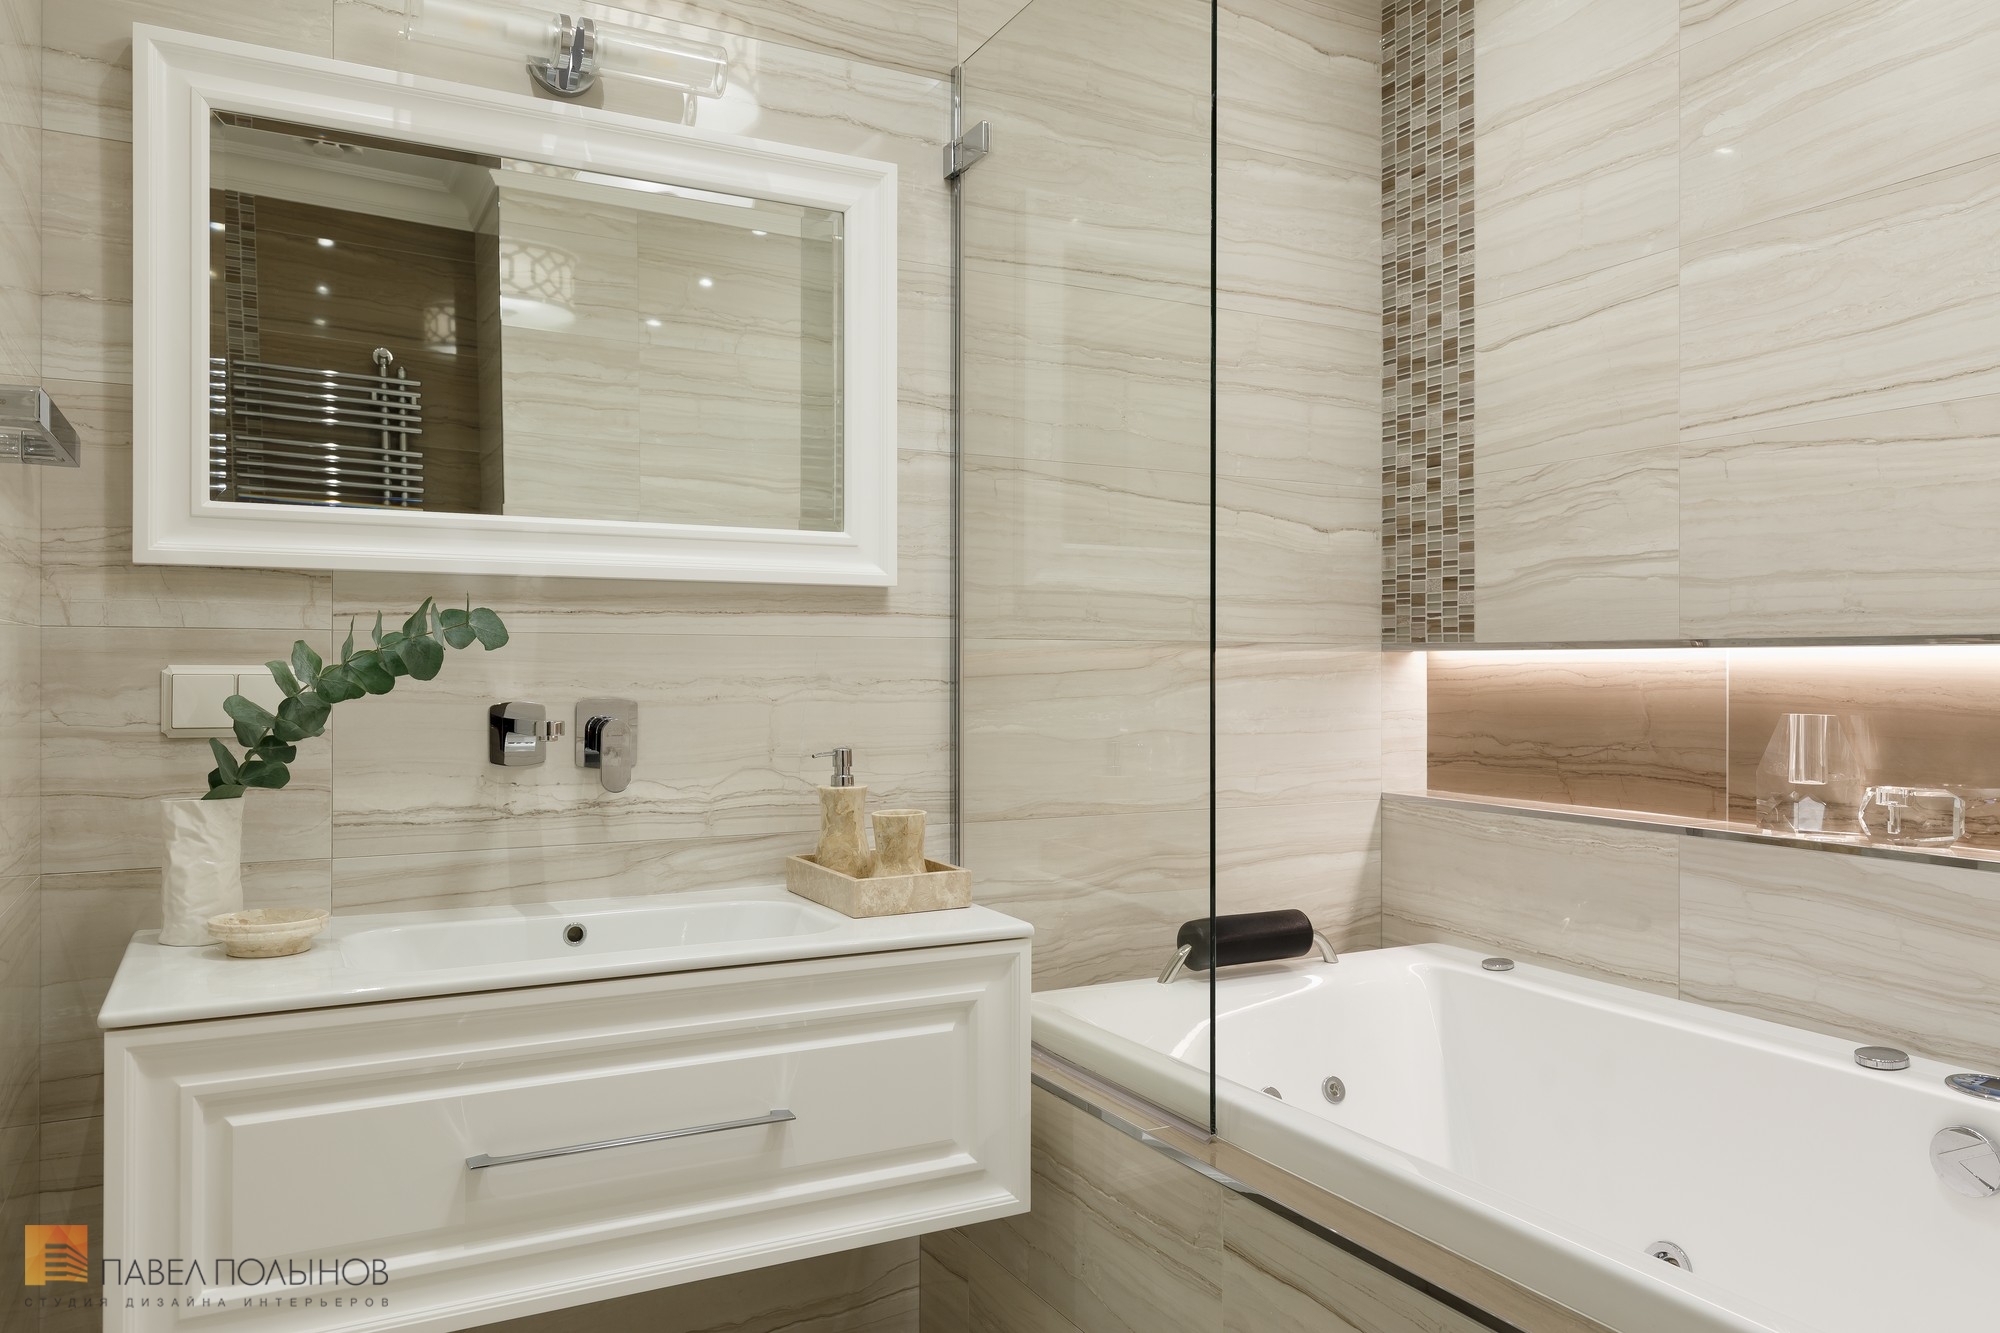 Фото ремонт и отделка ванной комнаты из проекта «Отделка квартиры по дизайн-проекту, ЖК «Академ-Парк», 107 кв.м.»